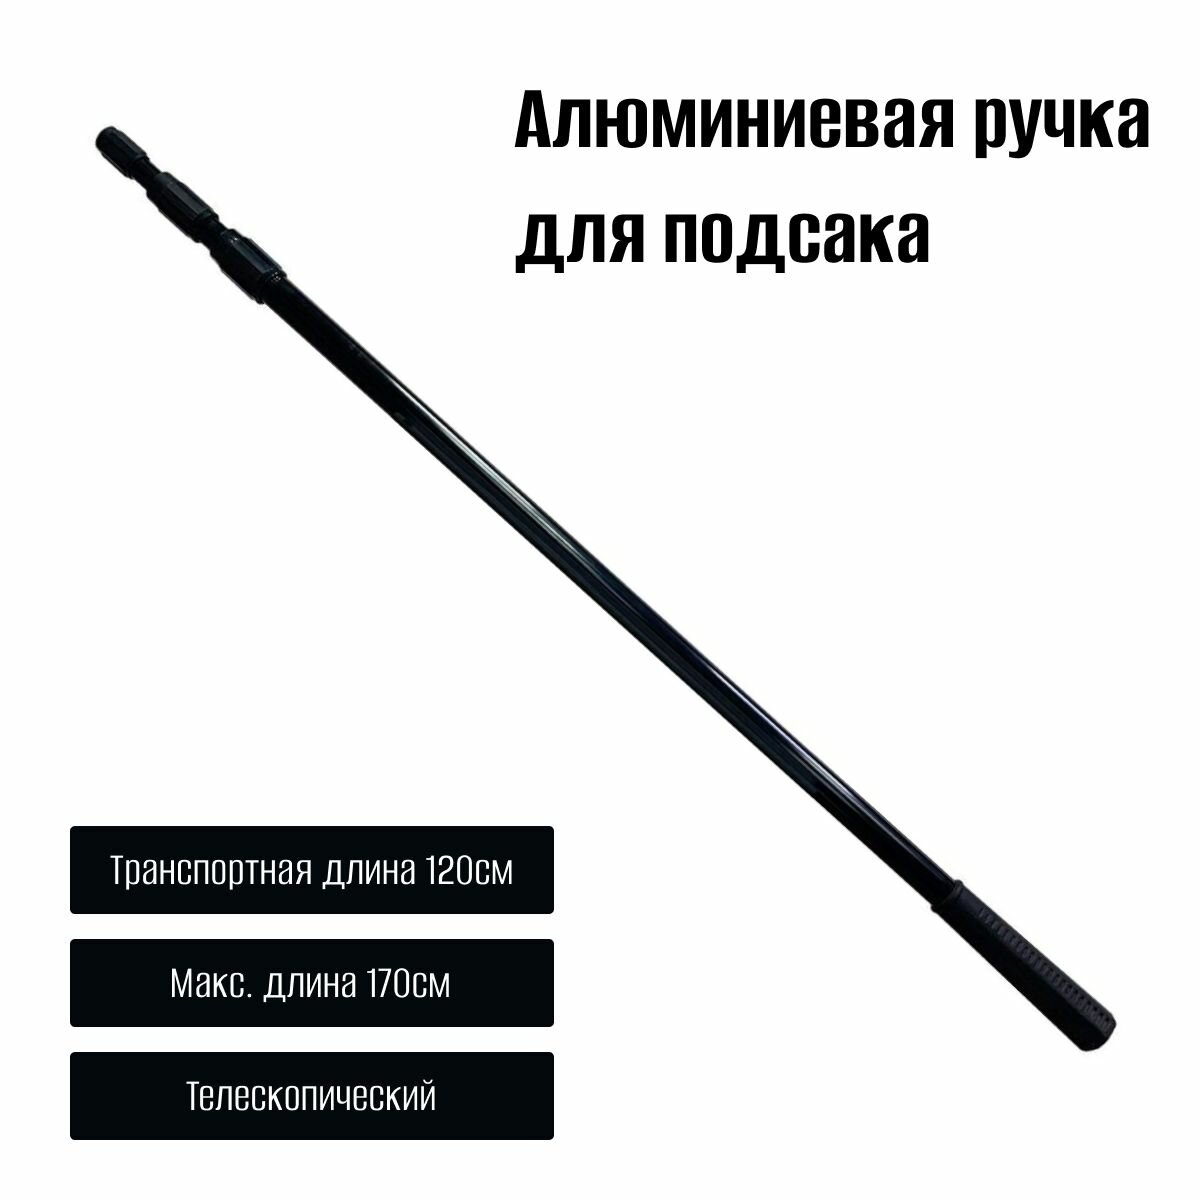 Ручка для сачка из алюминия 1.7 метра 3/8 дюйма евростандарт